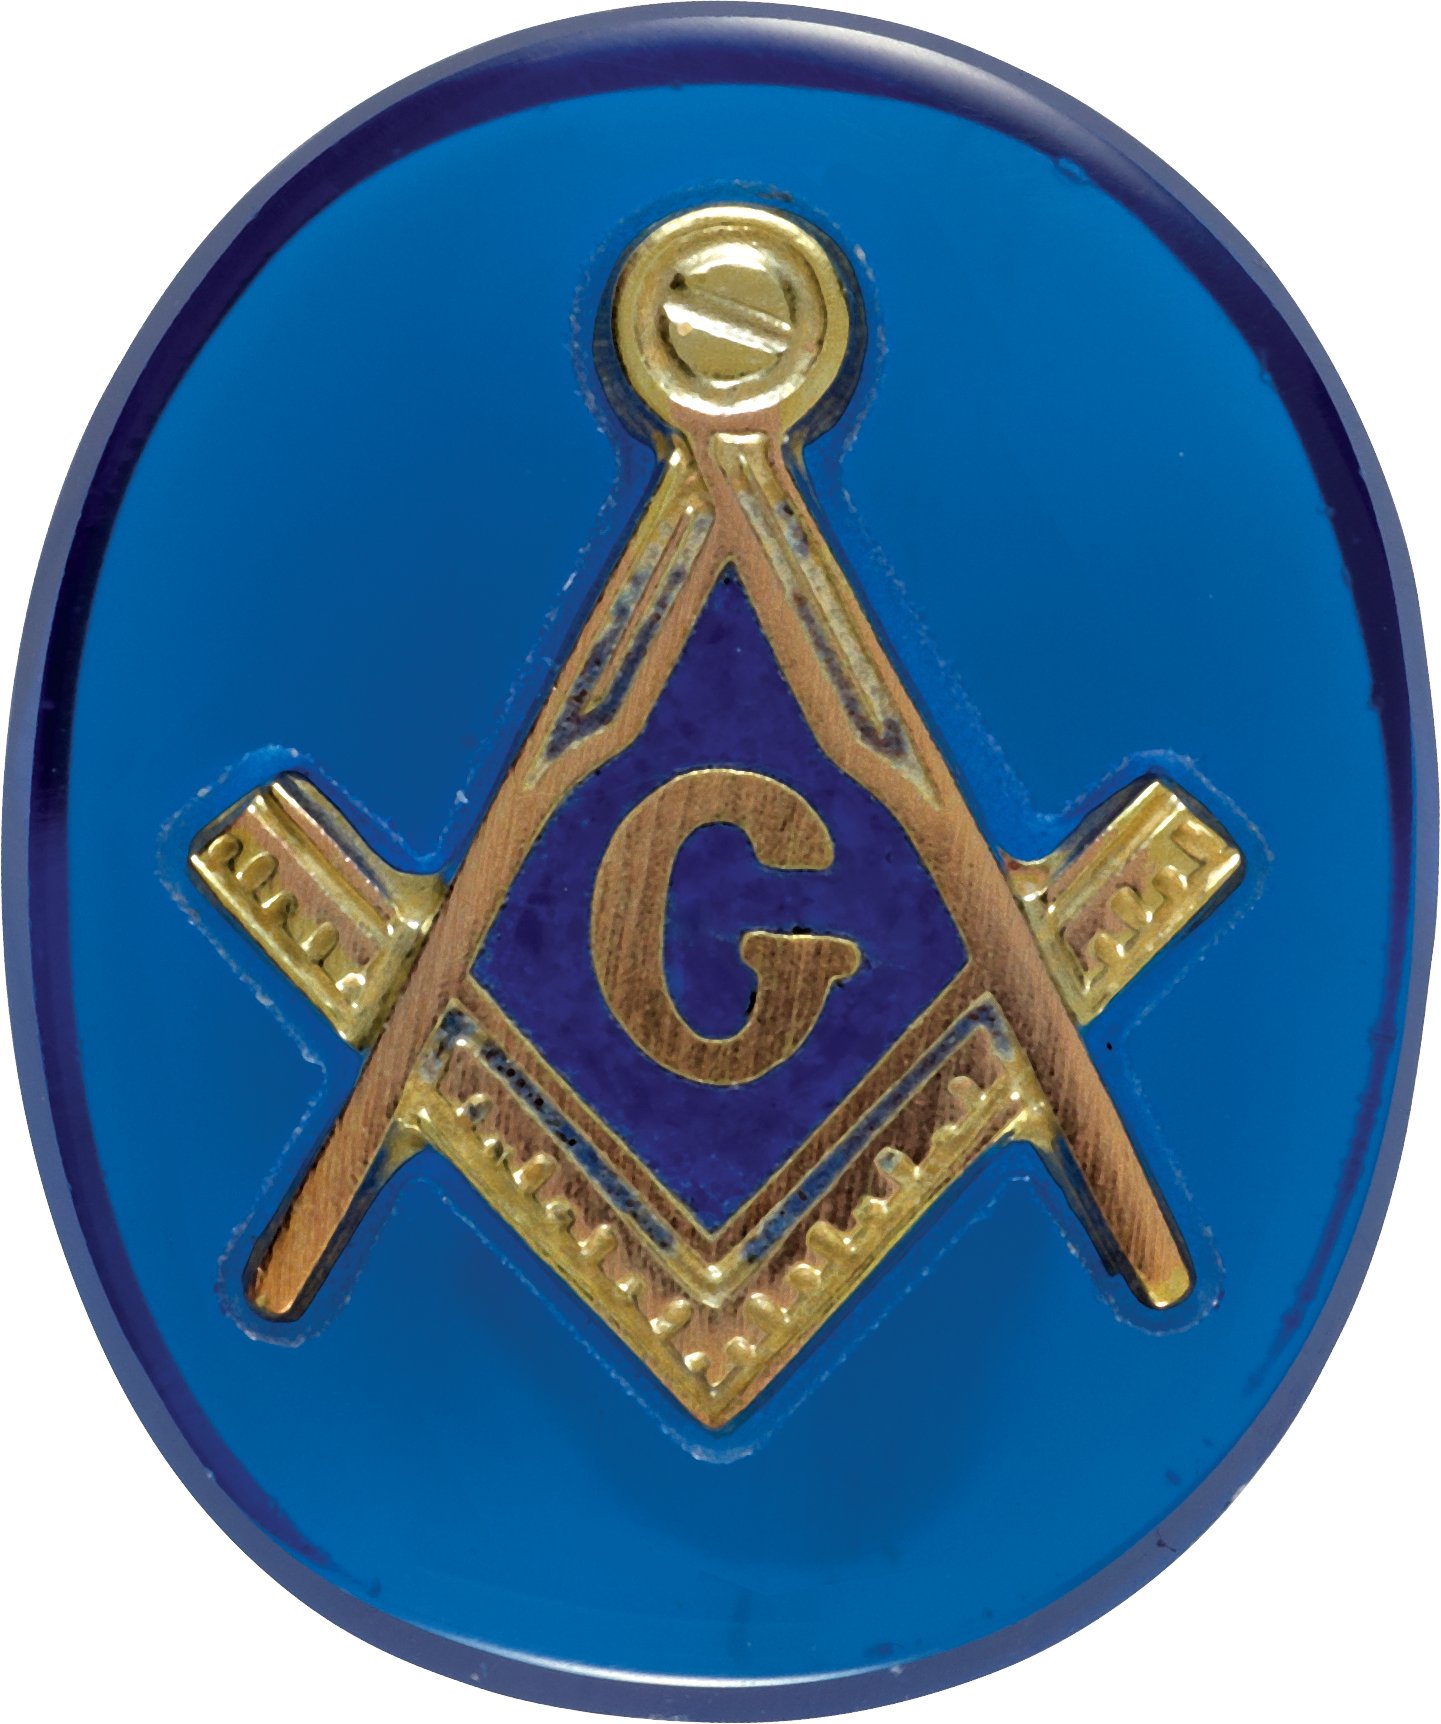 Oval Blue Masonic